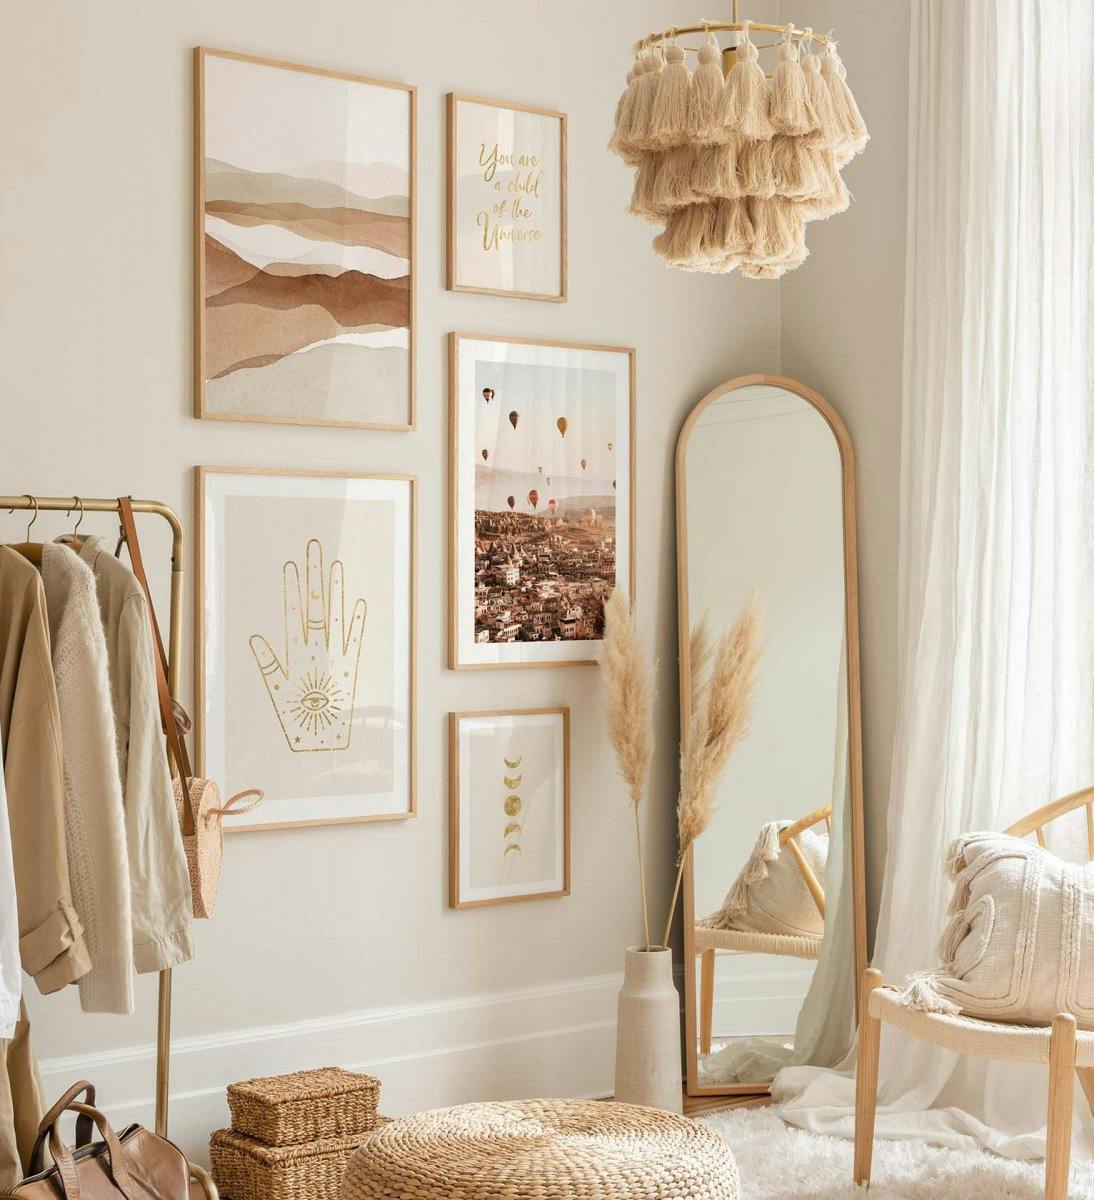 Nuchtere kleuren omarmen rust en mindfulness en zijn perfecte kleuren voor de slaapkamer